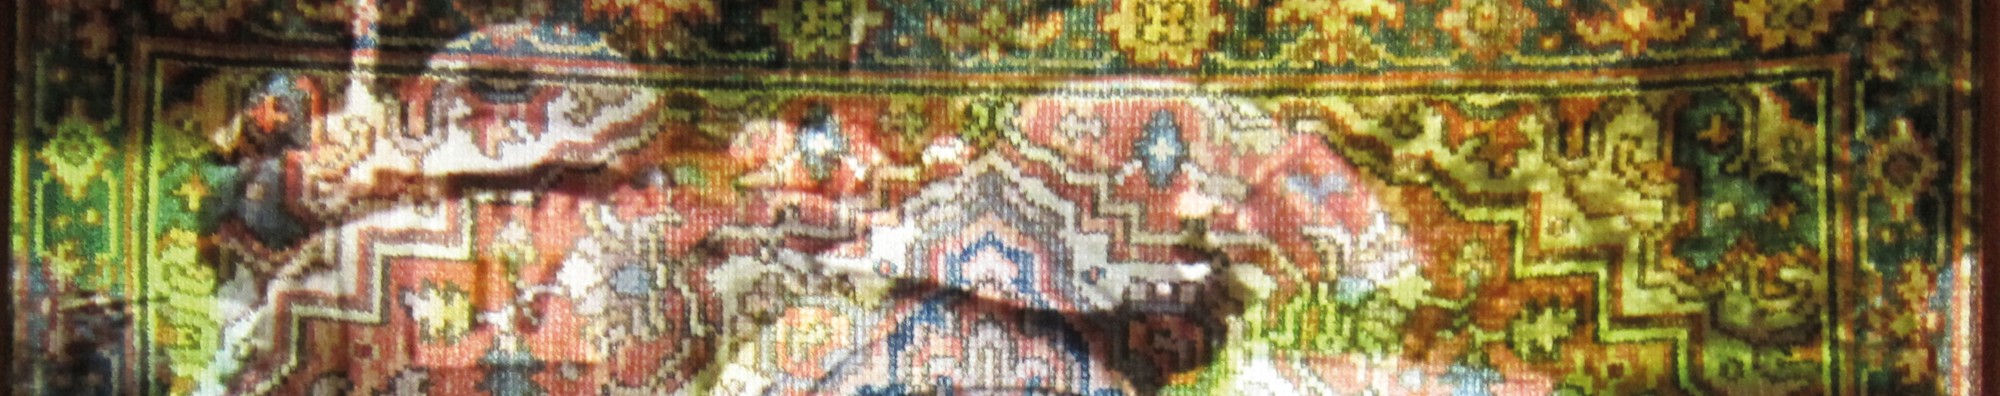 Wandteppich mit Muster mit Personen im gleichen Muster auf dem Teppich